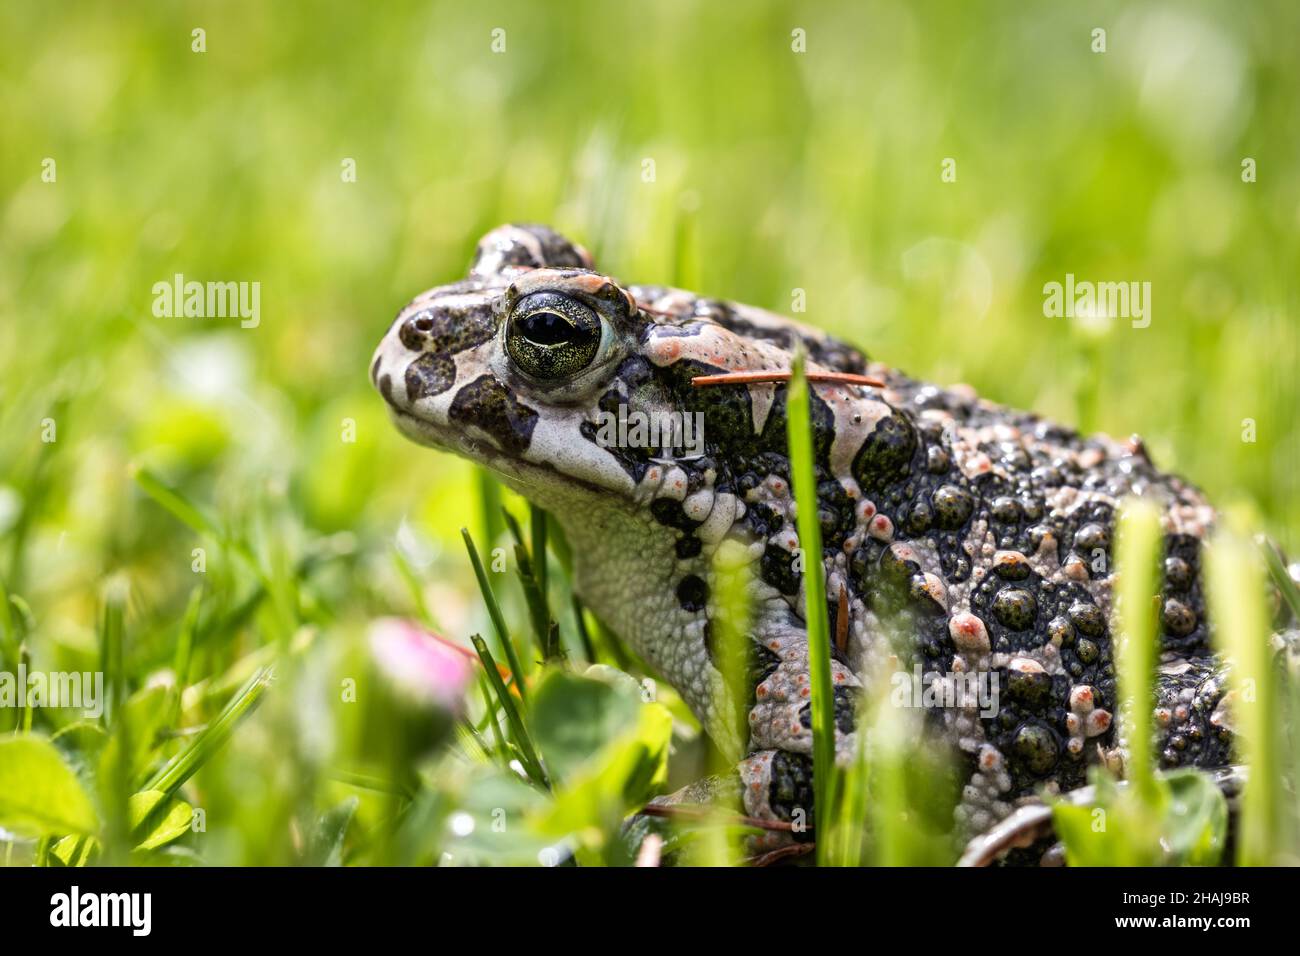 European green toad (Bufotes viridis) in grass. Frog in garden Stock Photo